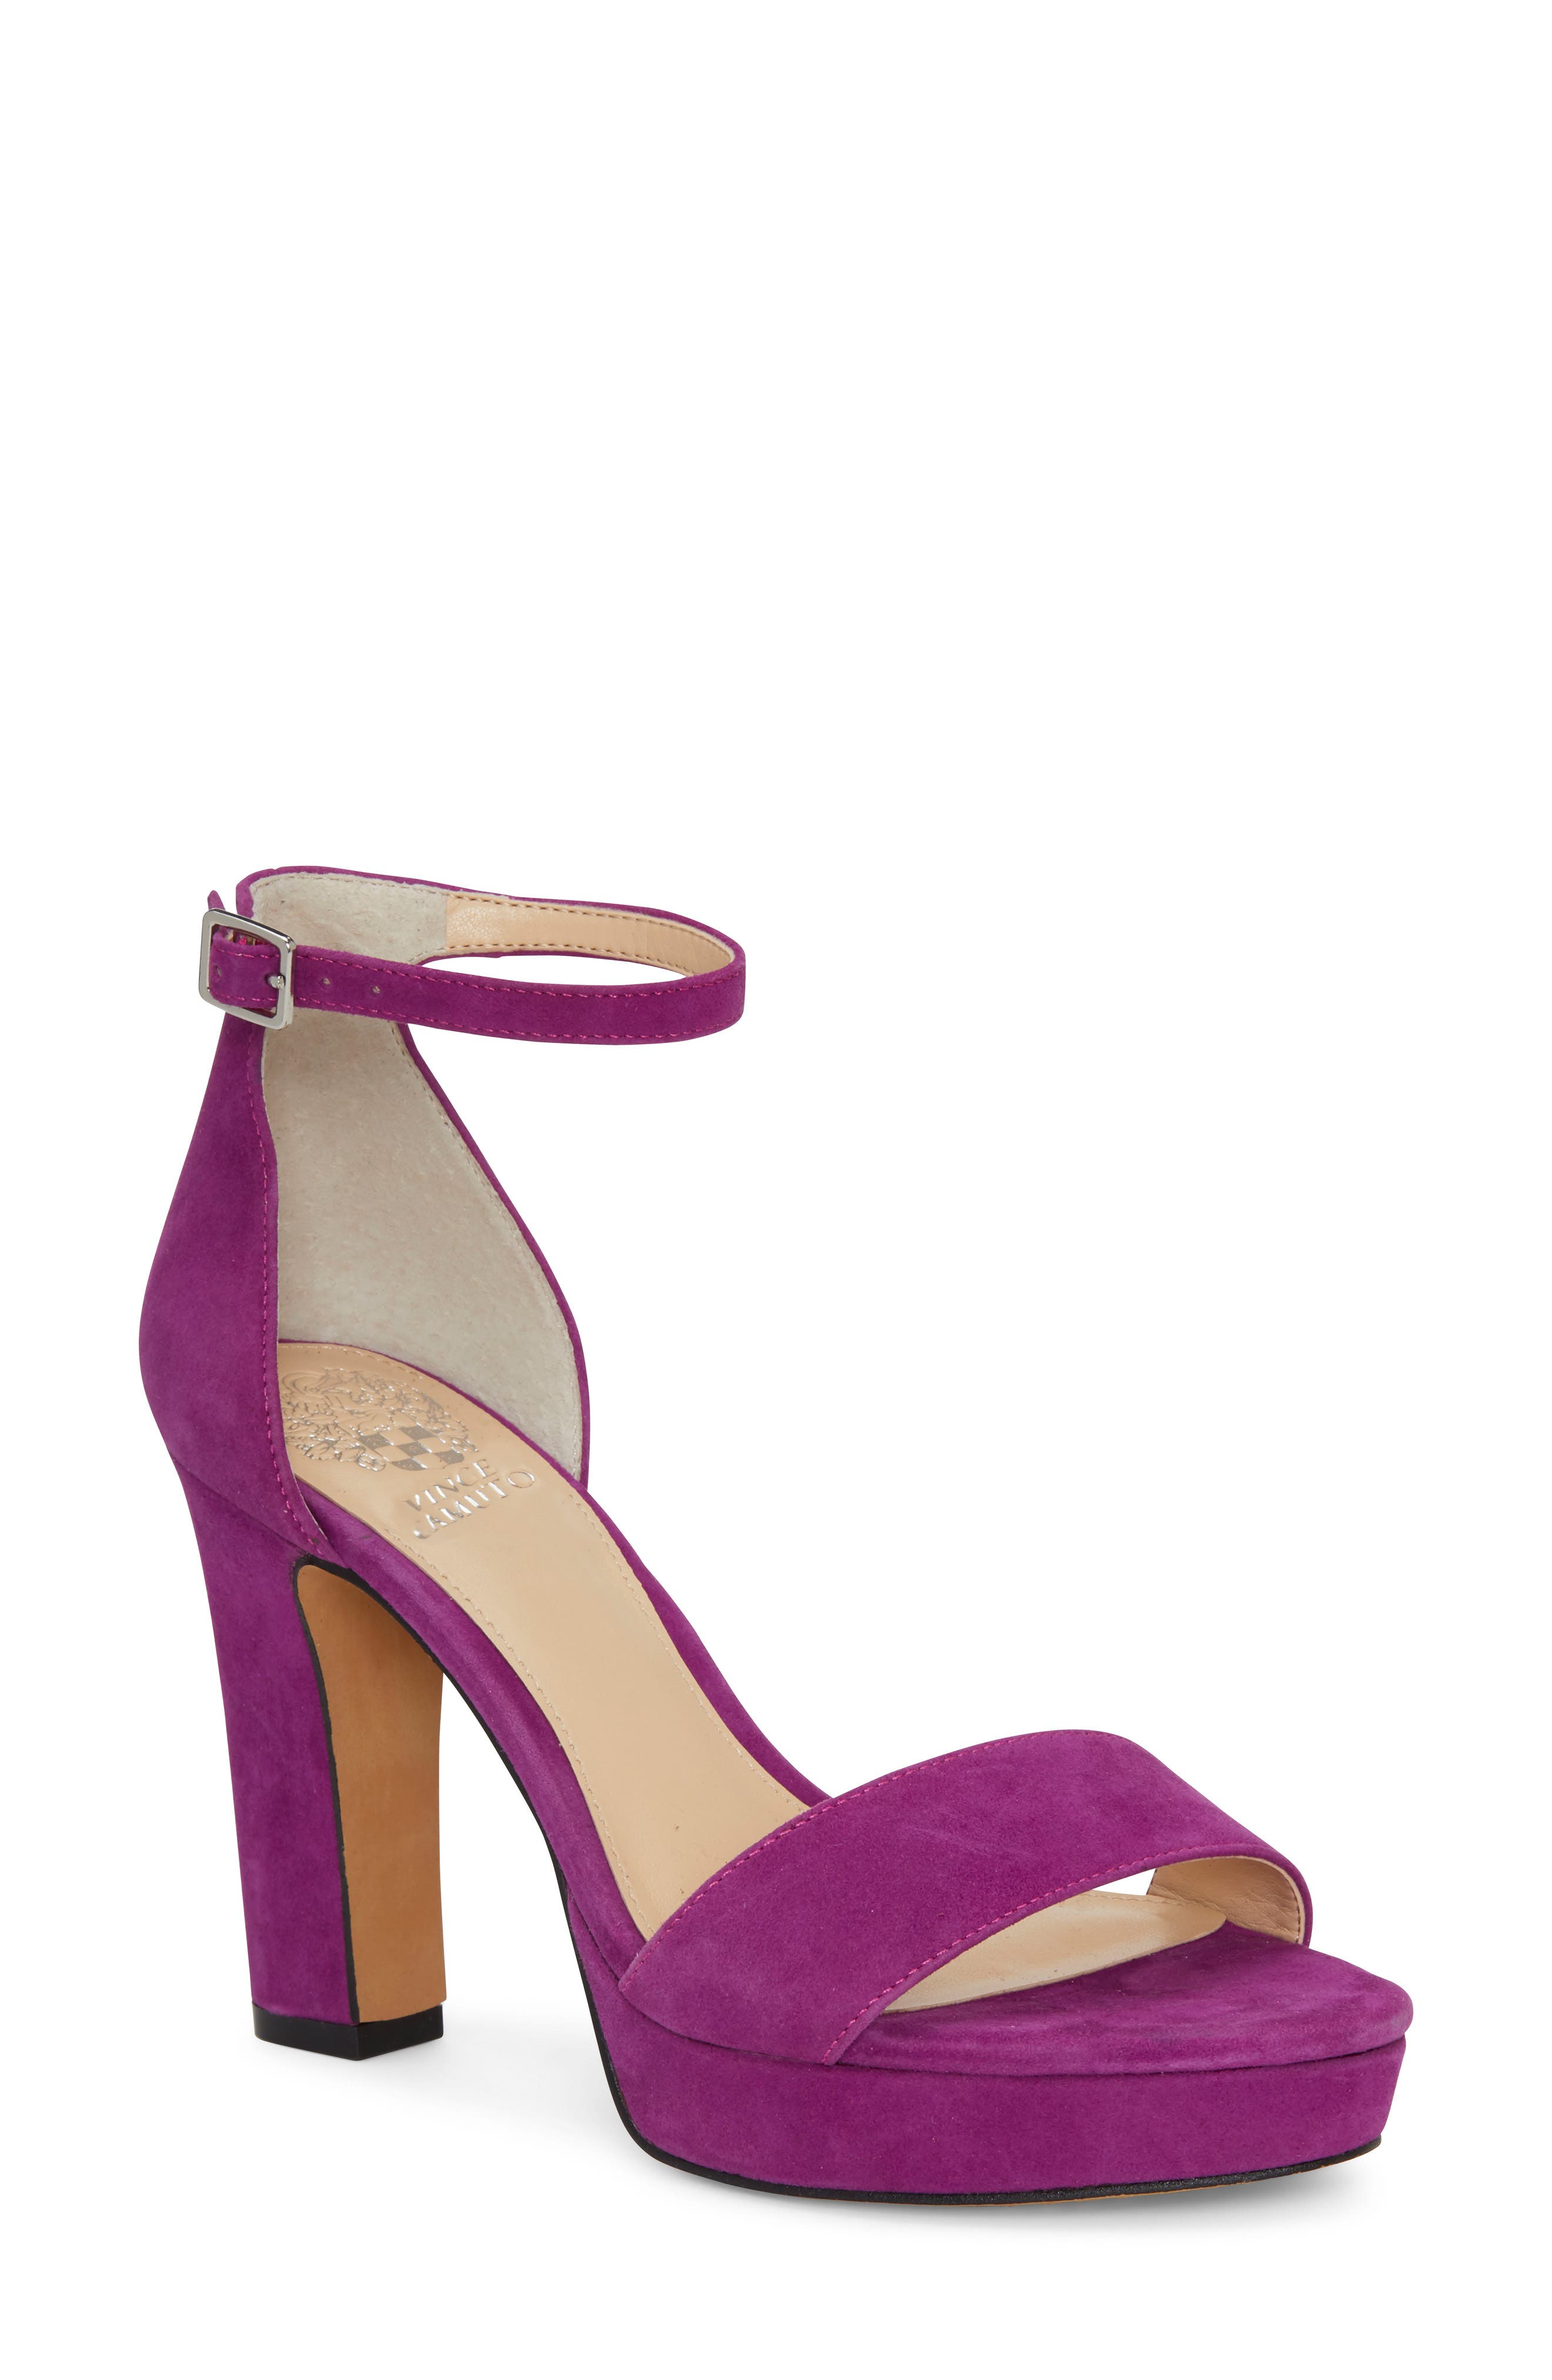 women's purple heels shoes